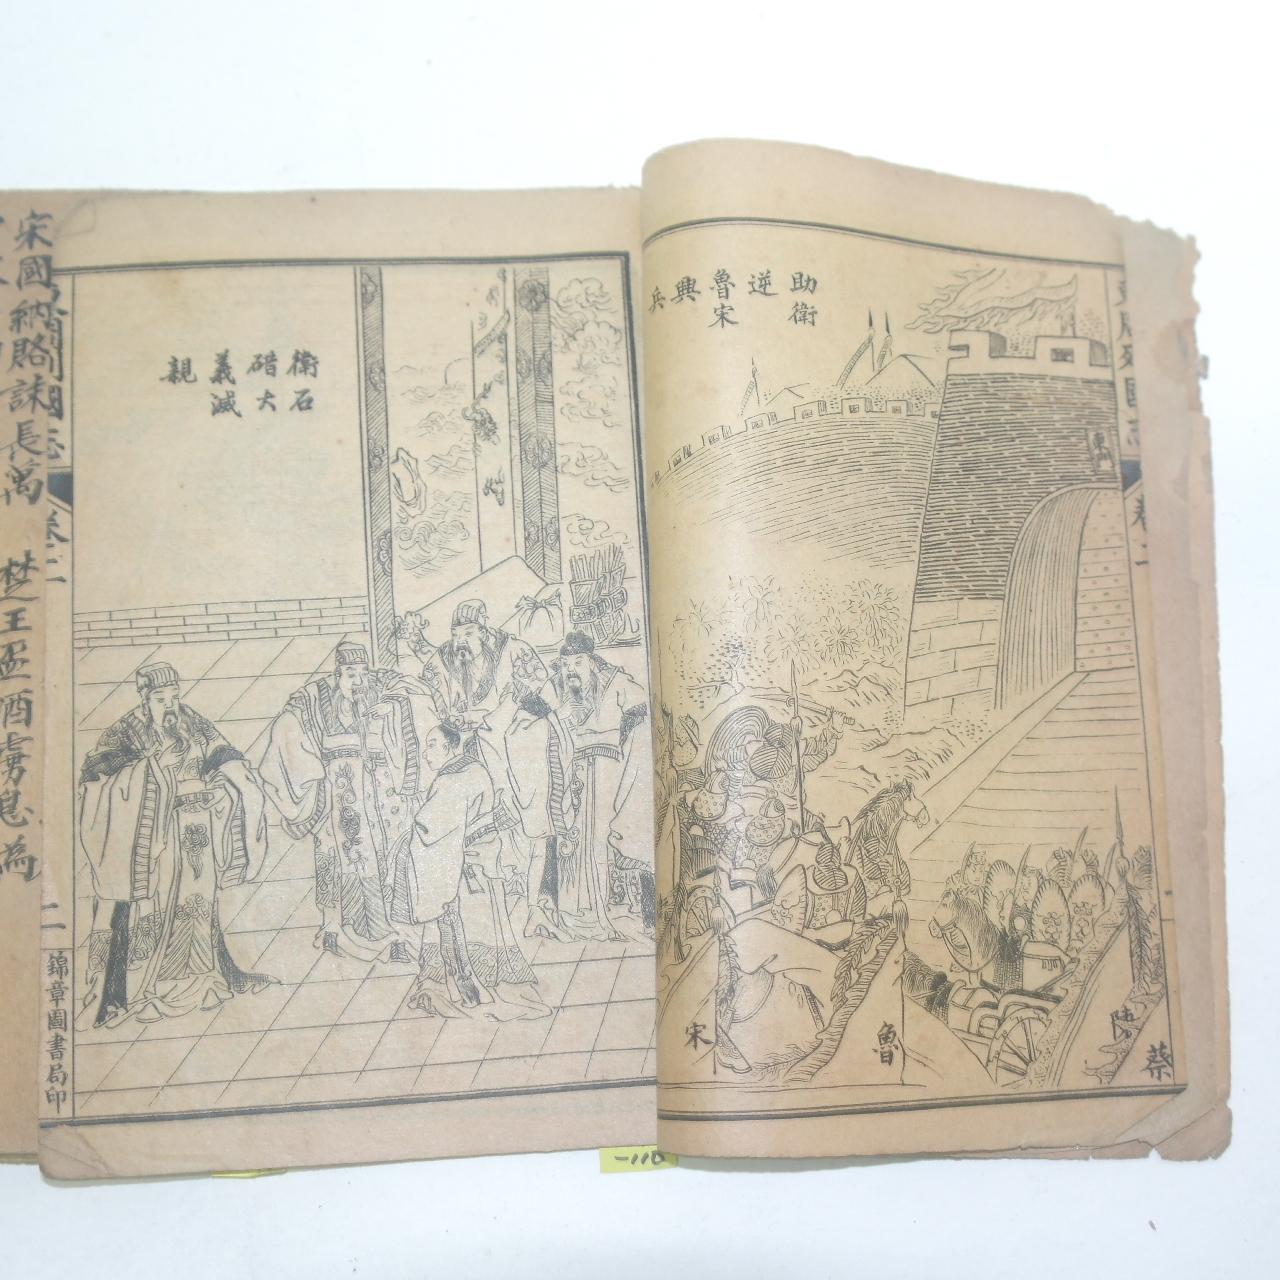 중국상해본 회도동주열국지(繪圖東周列國志) 3책